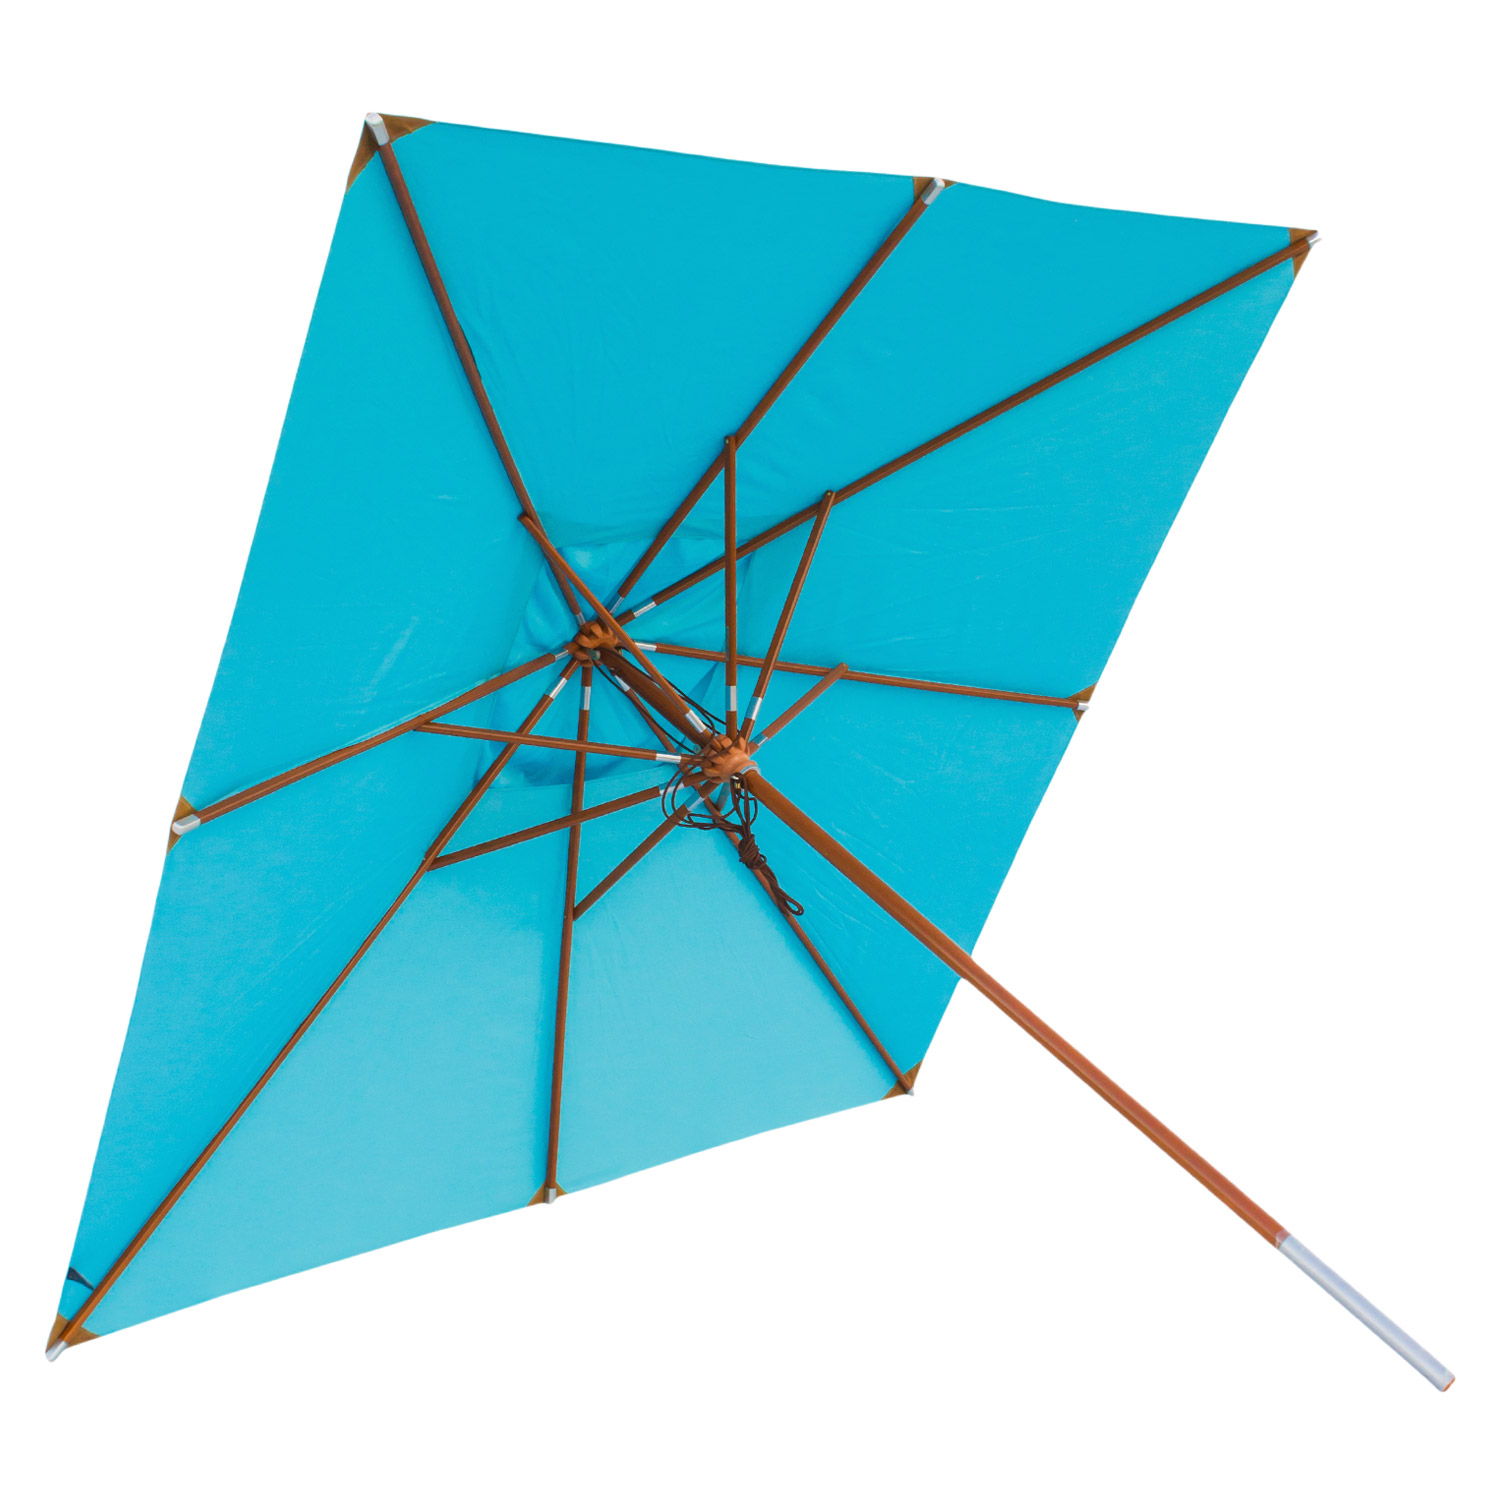 anndora Sonnenschirm mit Holz Gartenschirm 3x3m eckig Himmelblau Hellblau Winddach UV-Schutz - 3